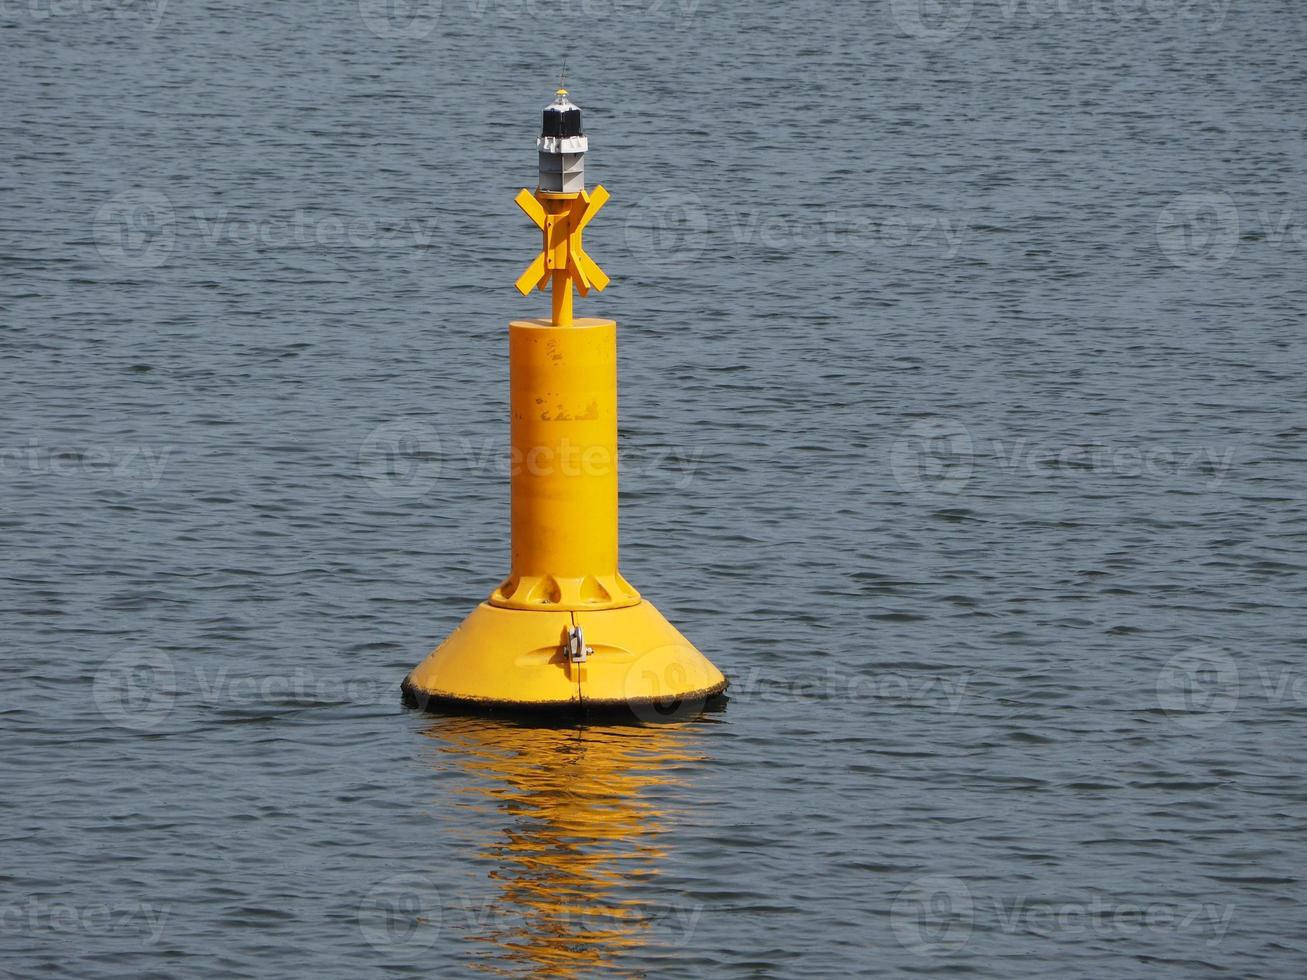 boya amarilla flotando en el mar foto